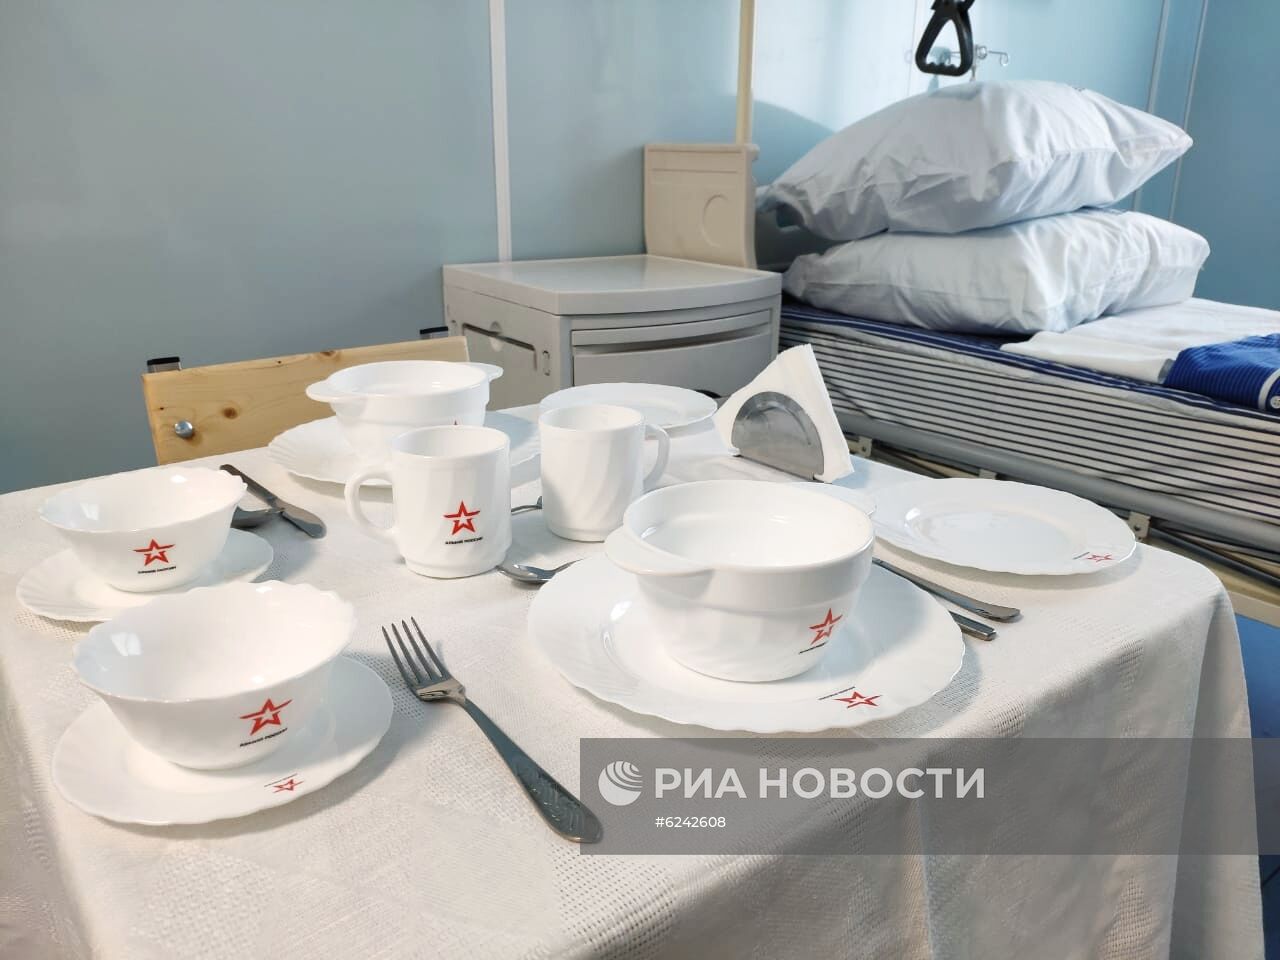 Медцентр, построенный Минобороны РФ для пациентов с COVID-19 в Калининграде